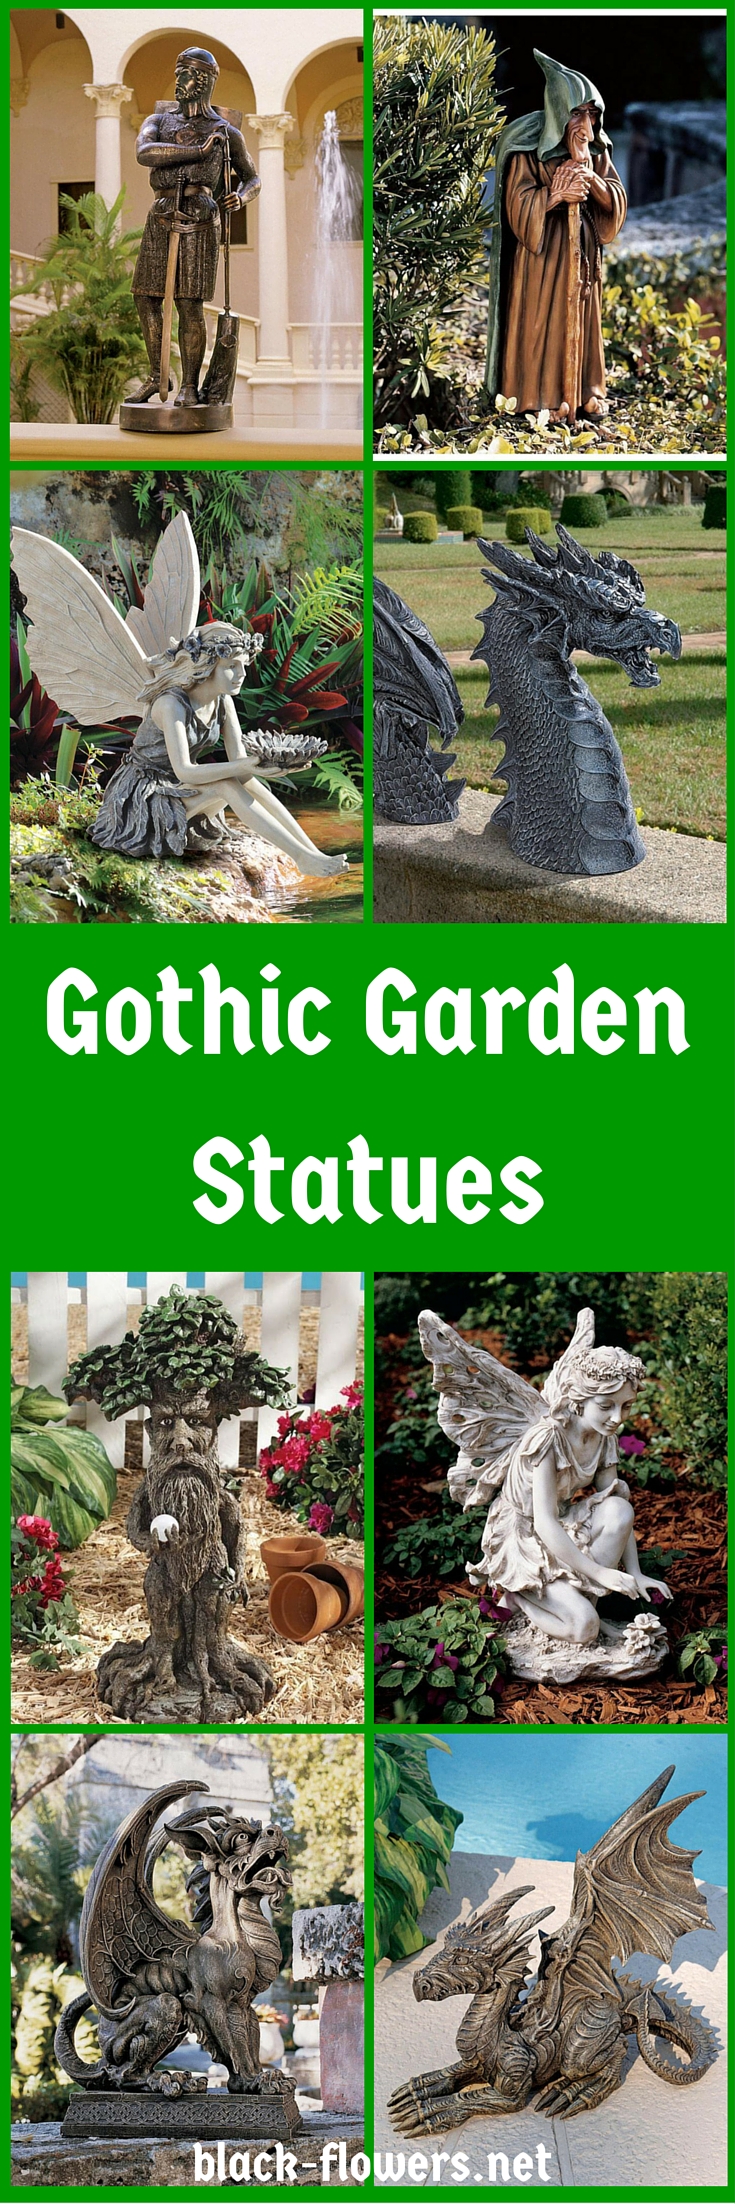 Gothic Garden Statues